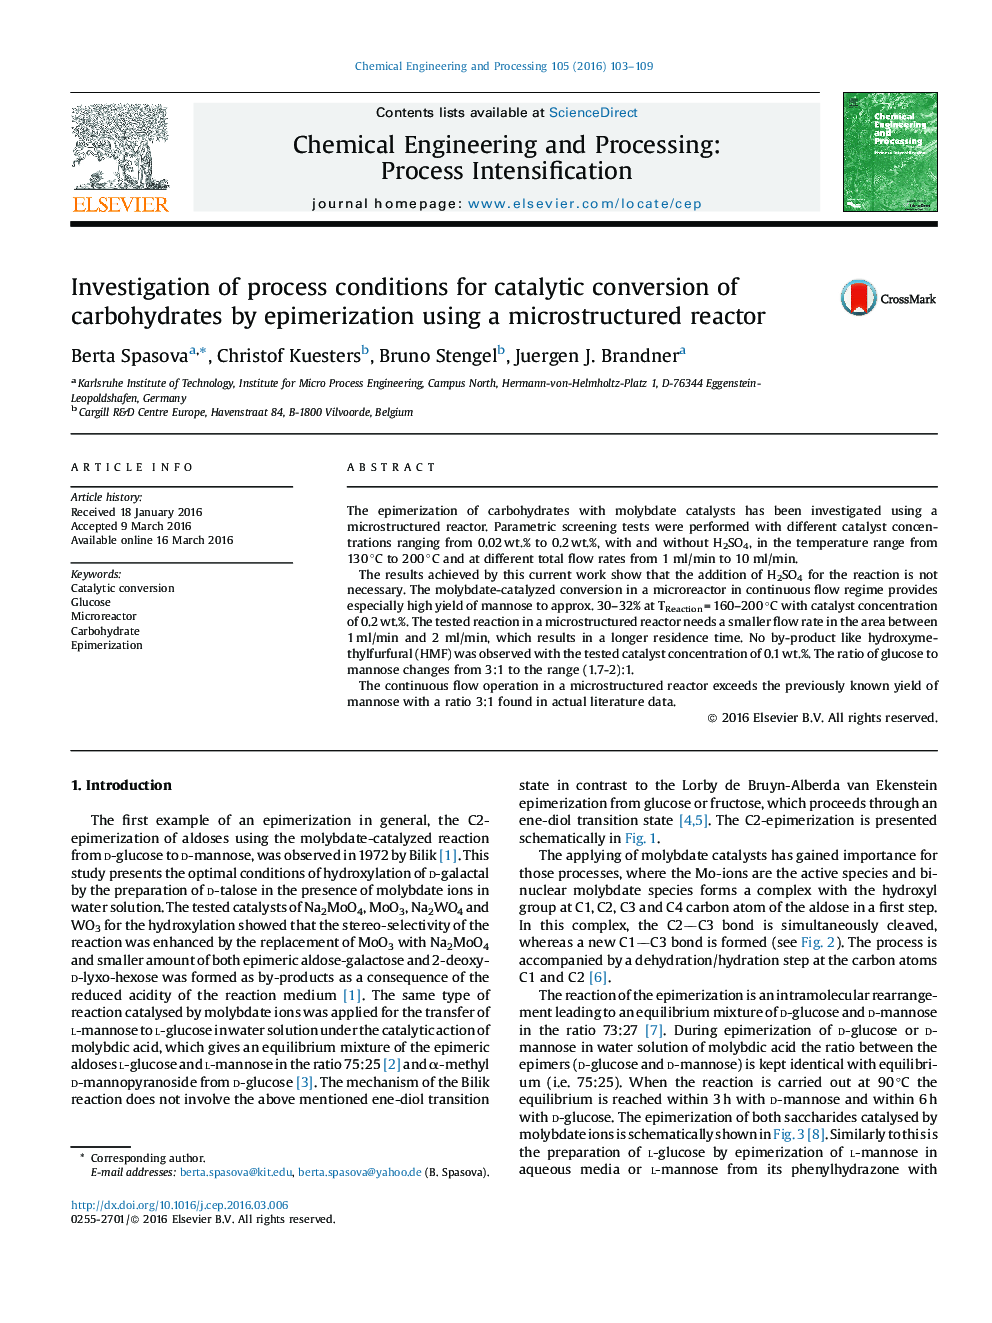 بررسی شرایط فرآیند تبدیل کاتالیزوری کربوهیدرات ها با استفاده از یک رآکتور ریزساختار 